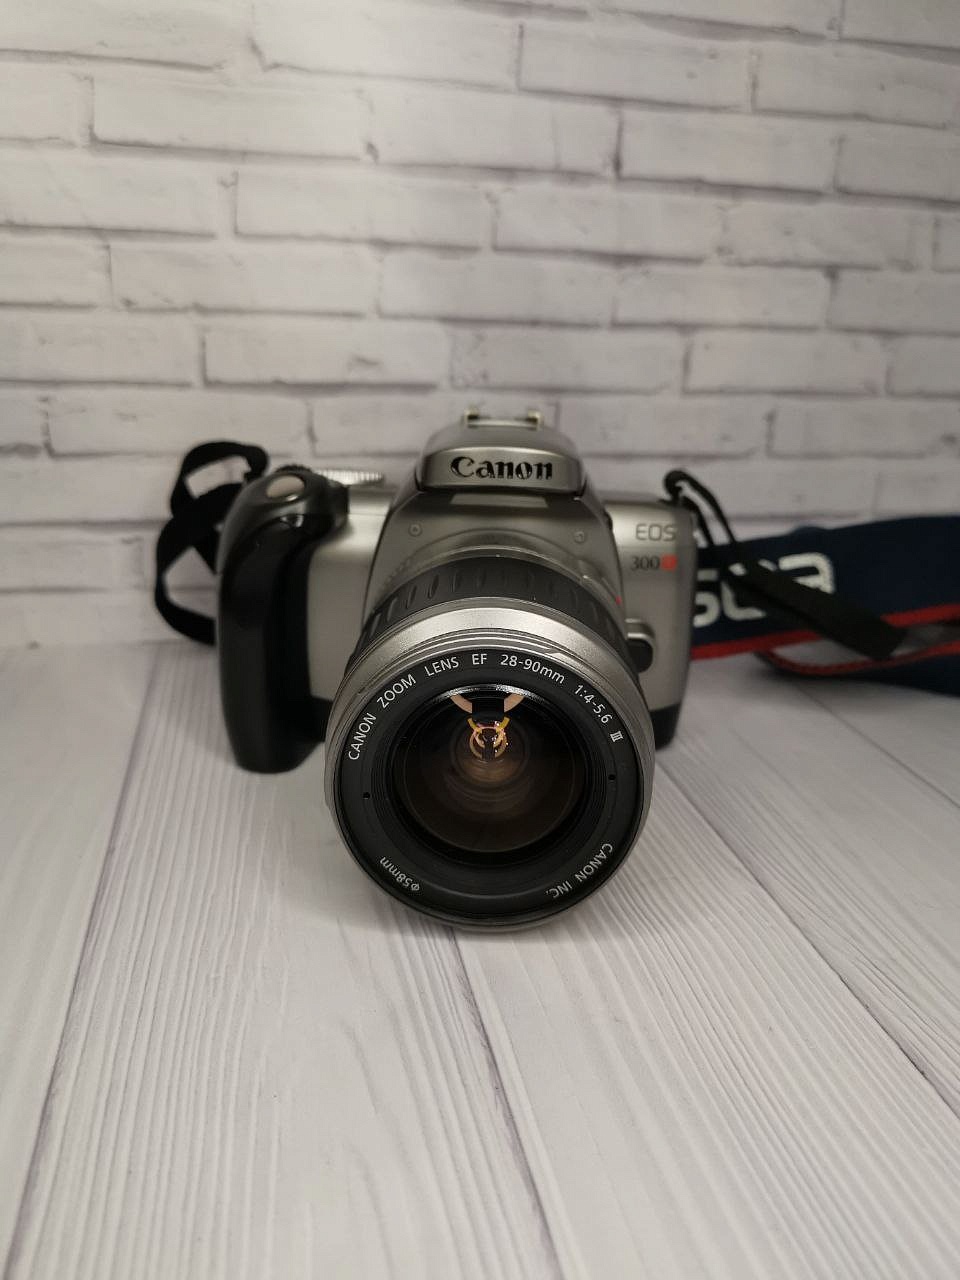 Canon EOS 300x + Canon EF 28-90 mm f/4-5.6 фото №1